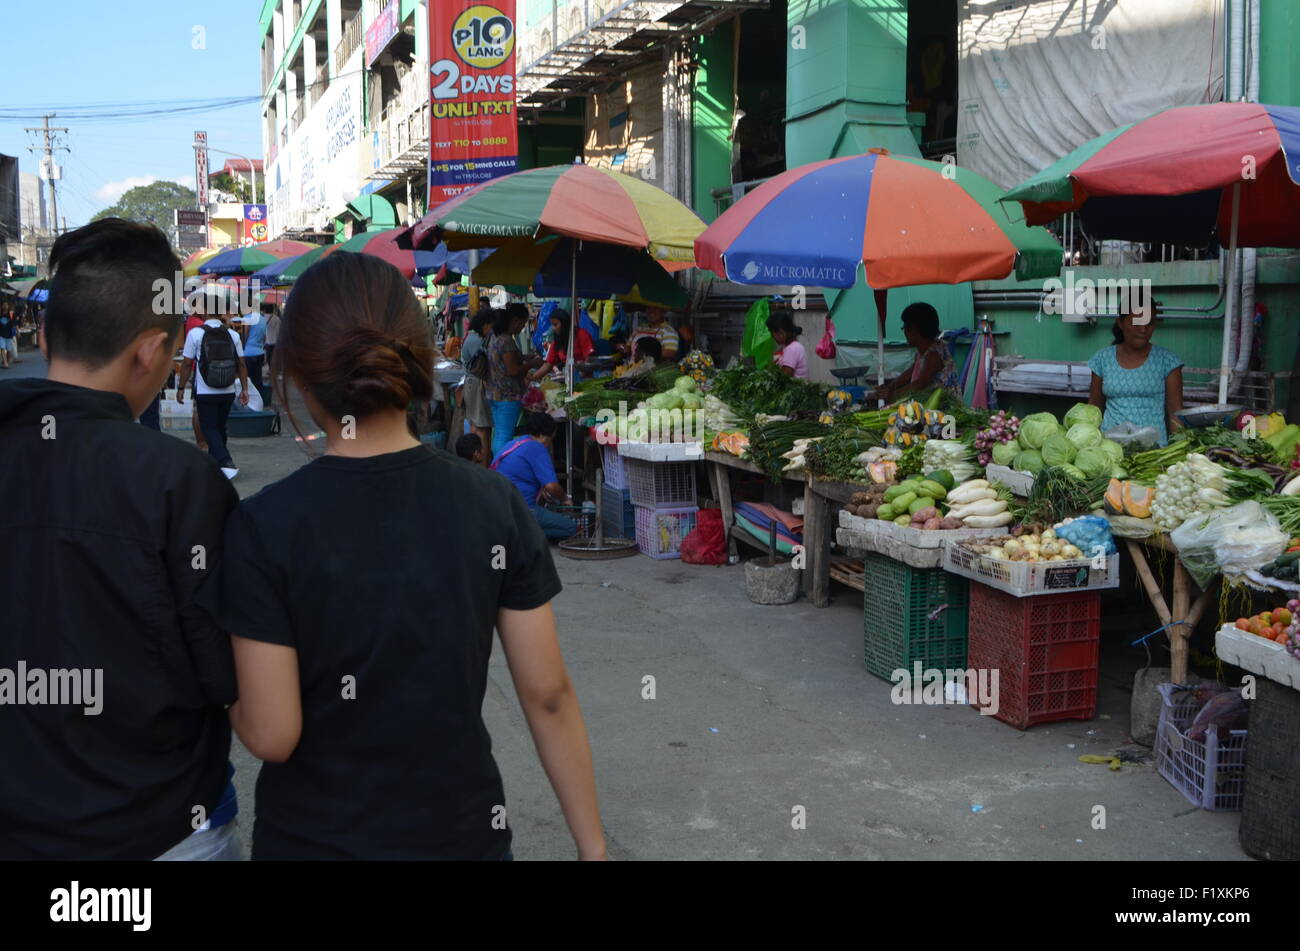 El mercado inTugeogharo el estado más septentrional de thePhilippines.calles puestos que venden de todo, desde fruta y verdura fresca Foto de stock